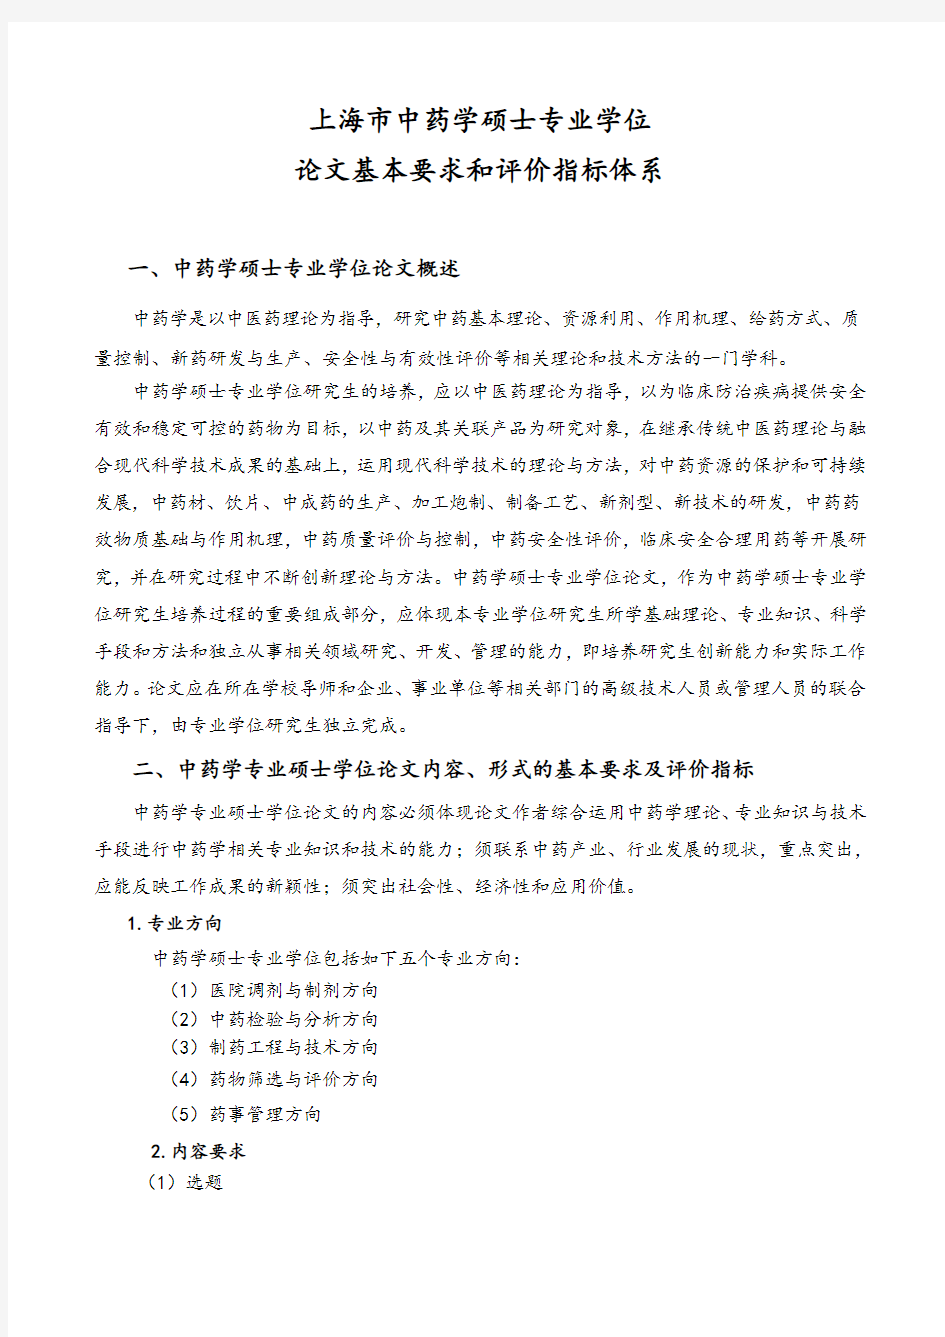 中药学硕士专业学位论文基本要求和评价指标体系-上海中医药大学